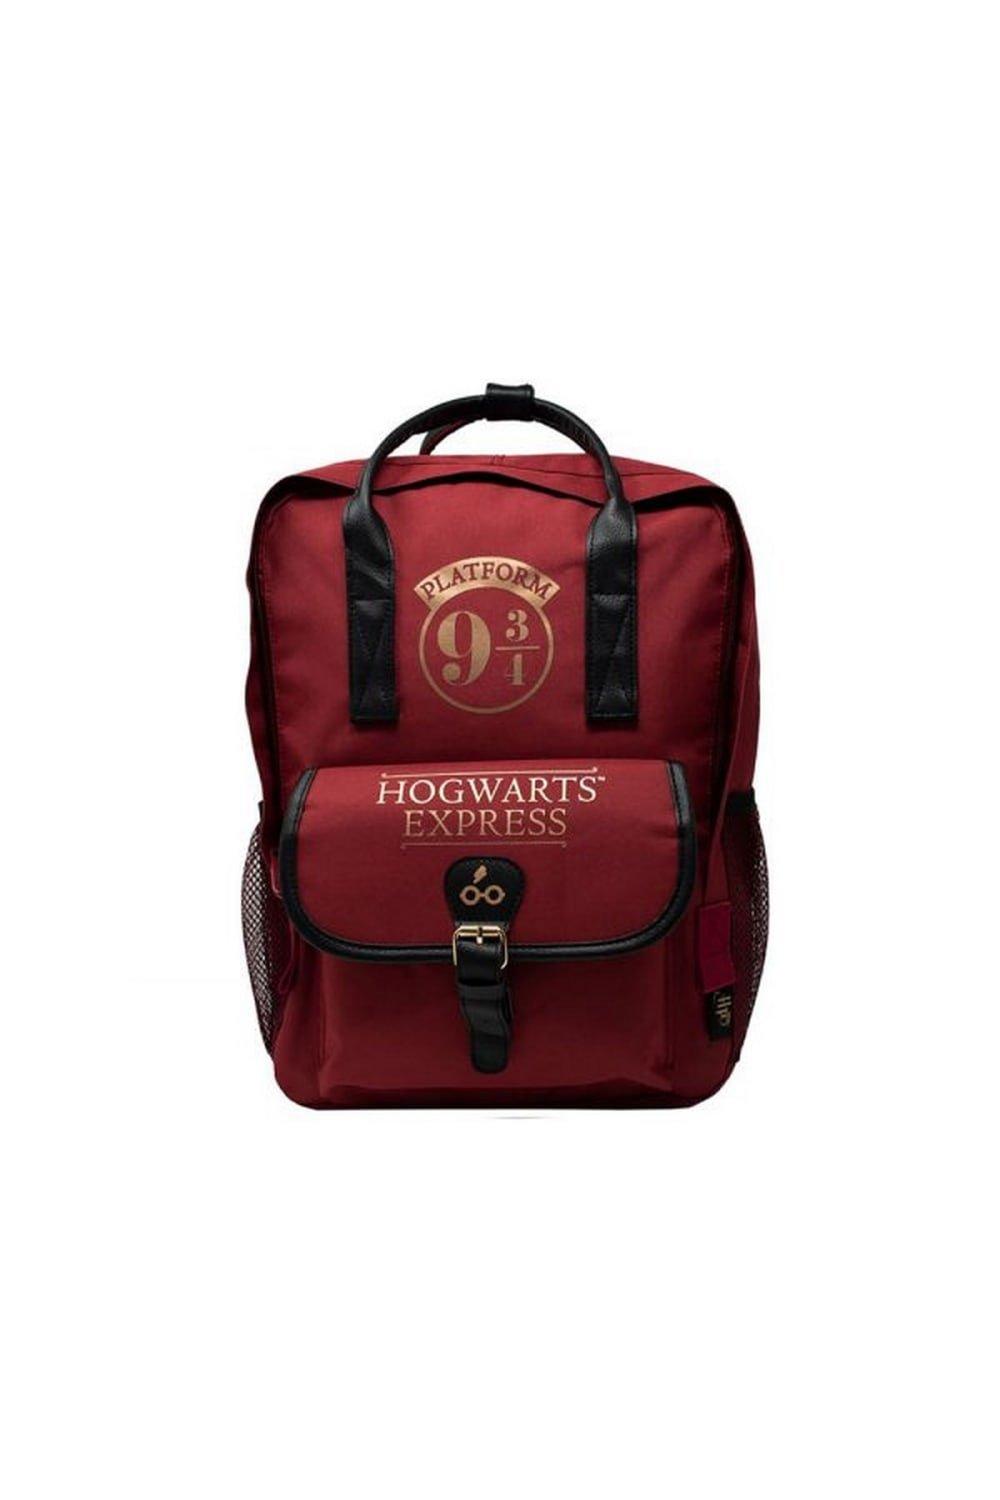 игровой набор harry potter платформа 9 3 4 Платформа 9 3 4 Рюкзак Harry Potter, красный